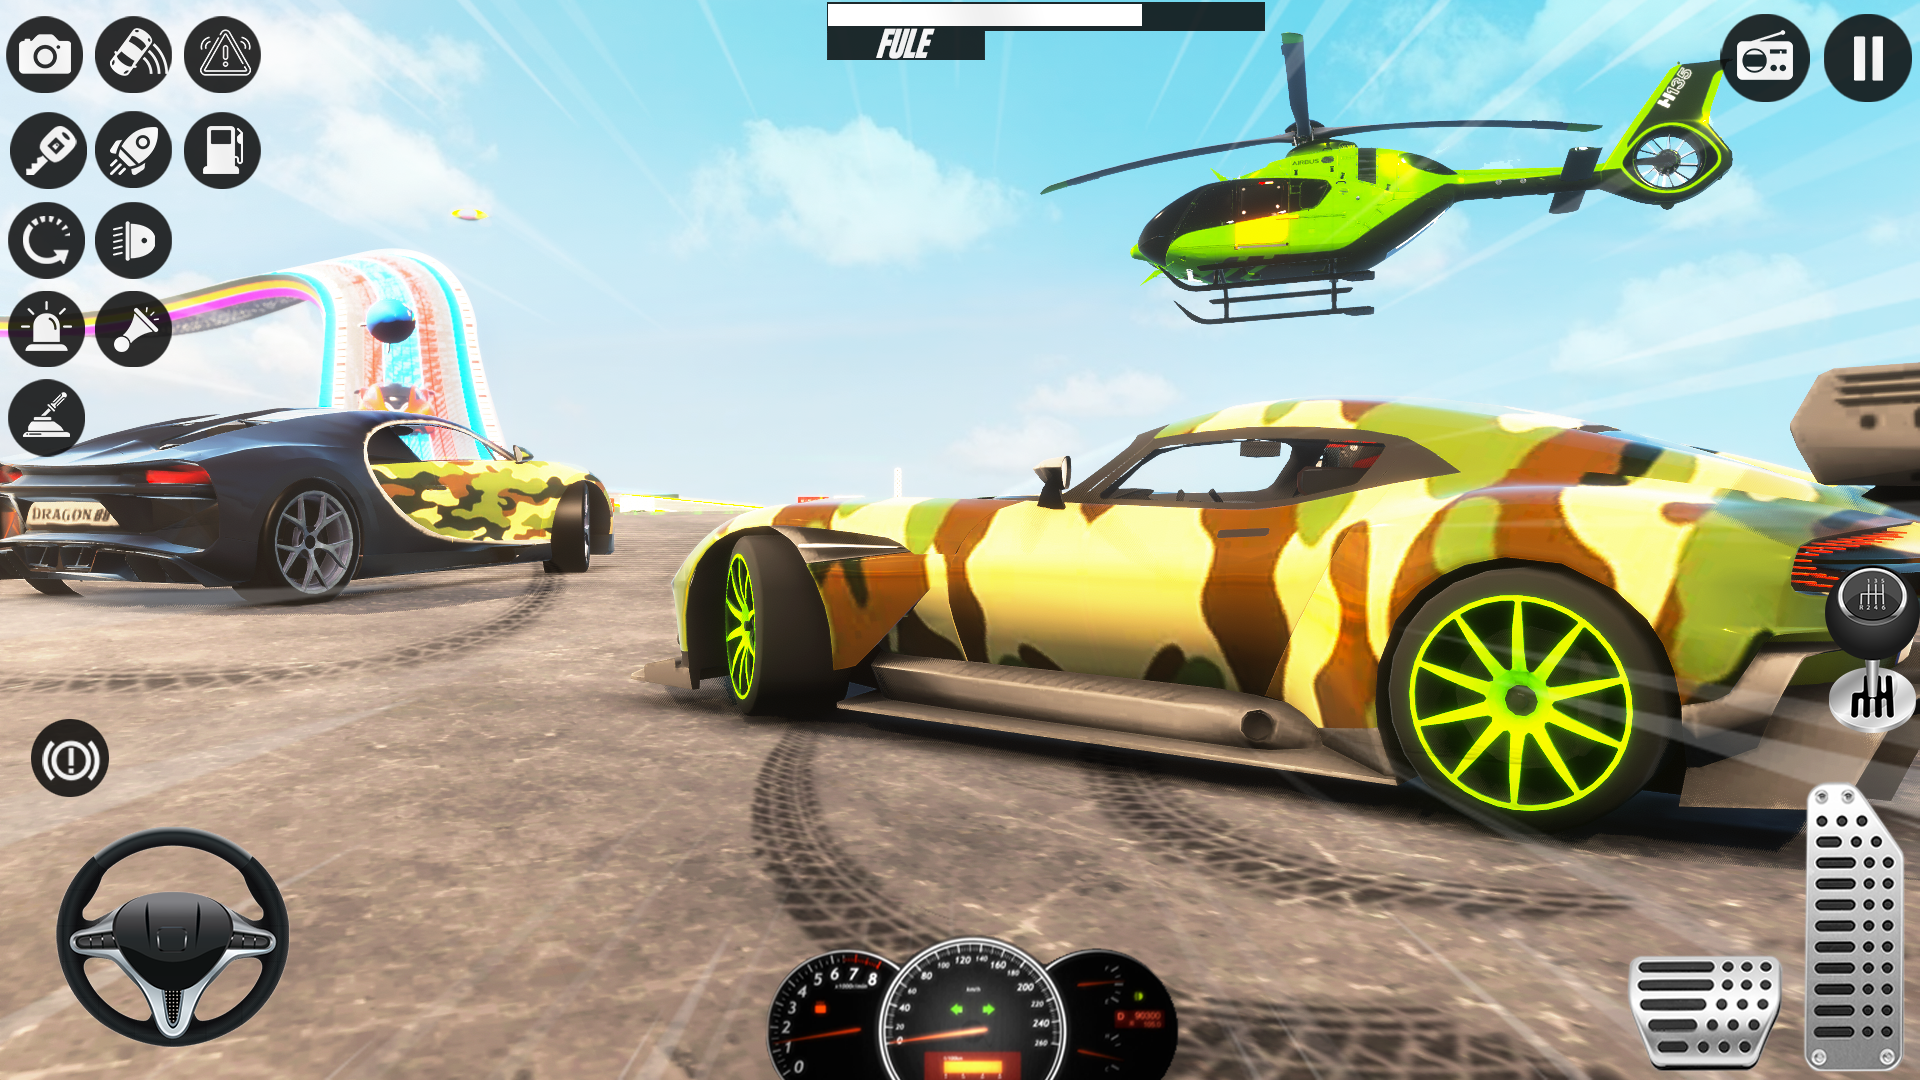 Screenshot 1 of Permainan Kereta Memandu Sekolah Tentera 1.0.12